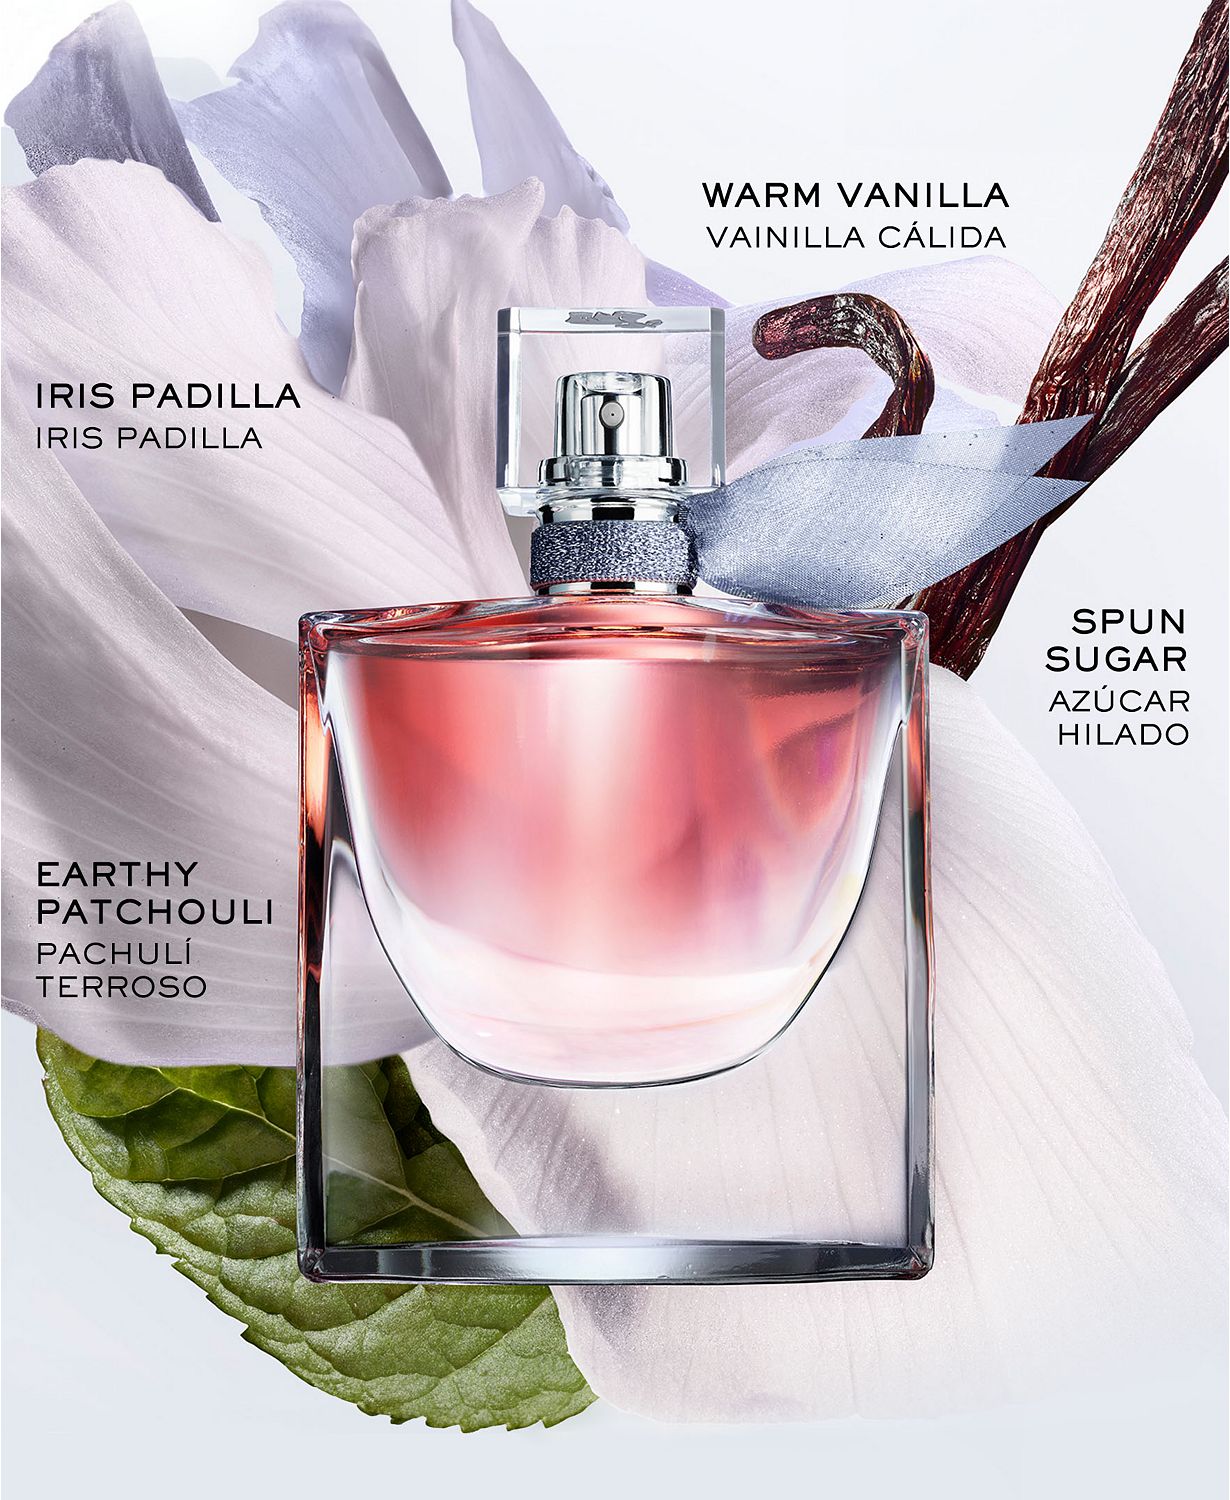 La vie est belle Eau de Parfum Women's Fragrance Refillable, 3.4 oz.